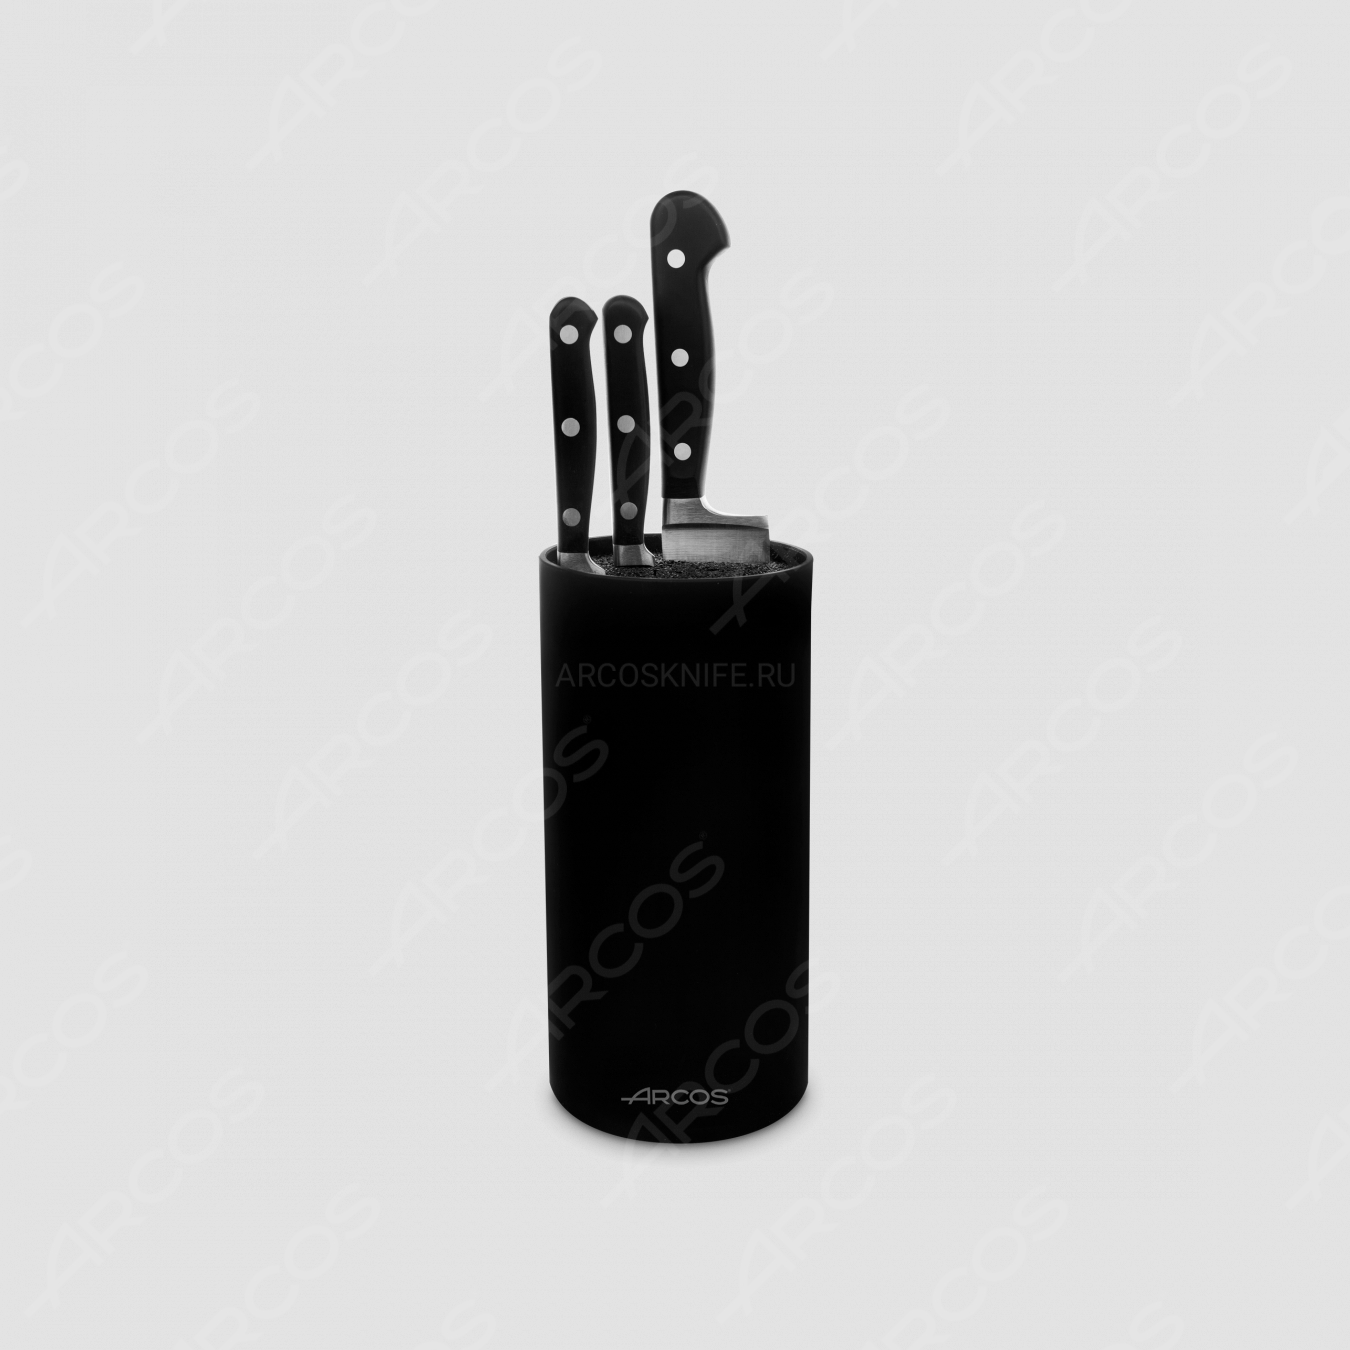 Набор из 3-х ножей с черной подставкой, серия Opera, ARCOS, Испания